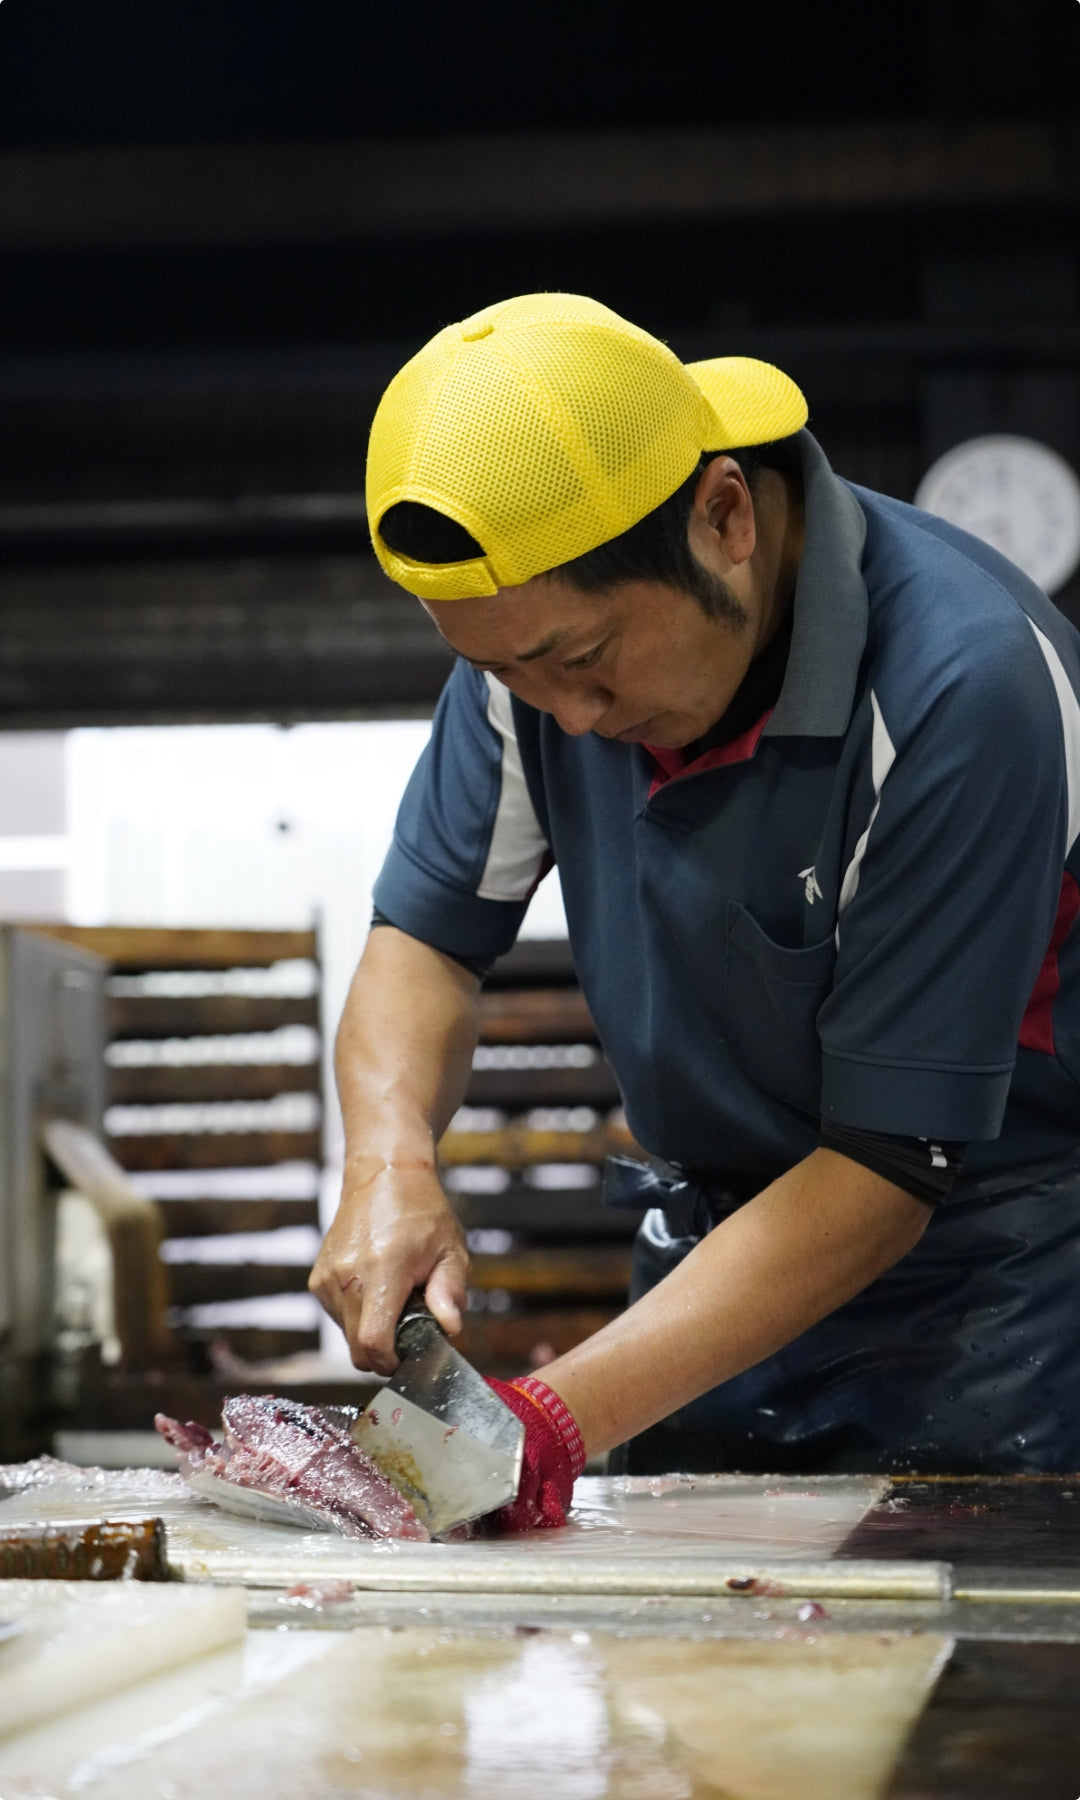 山吉國澤百馬商店の本枯節は、調理する方を想像しながら、削るときに握りやすい形を考えてカットしています。